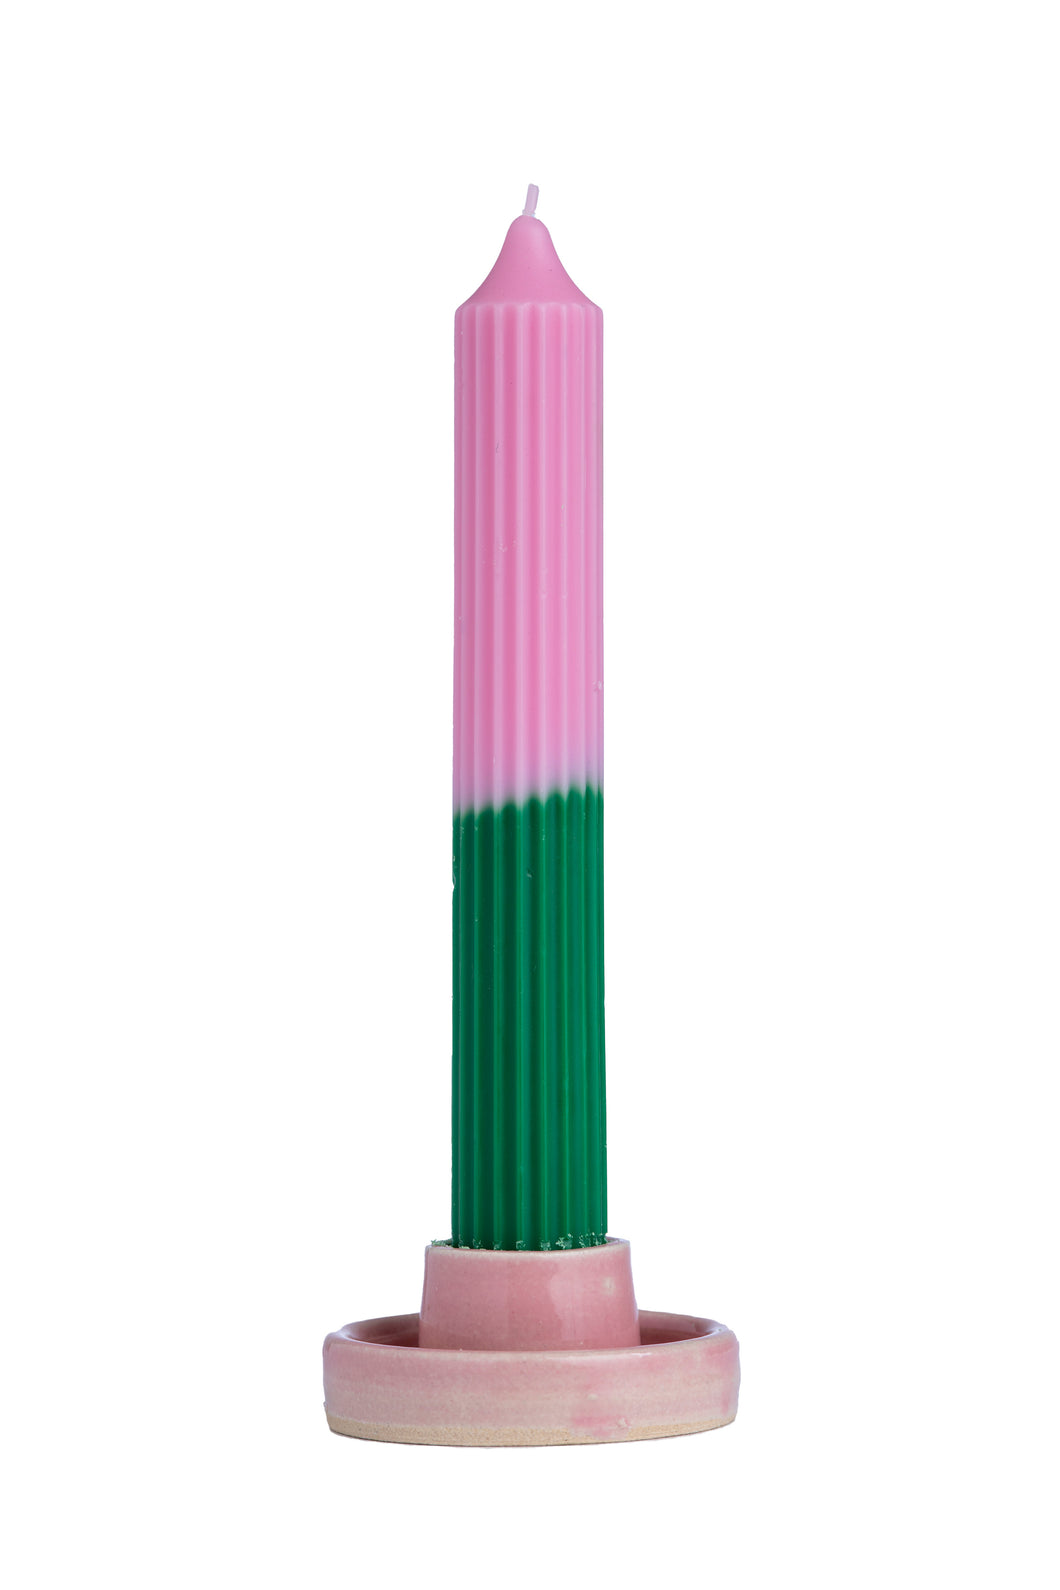 Vela delgada y alta con forma de pilar rosa y verde